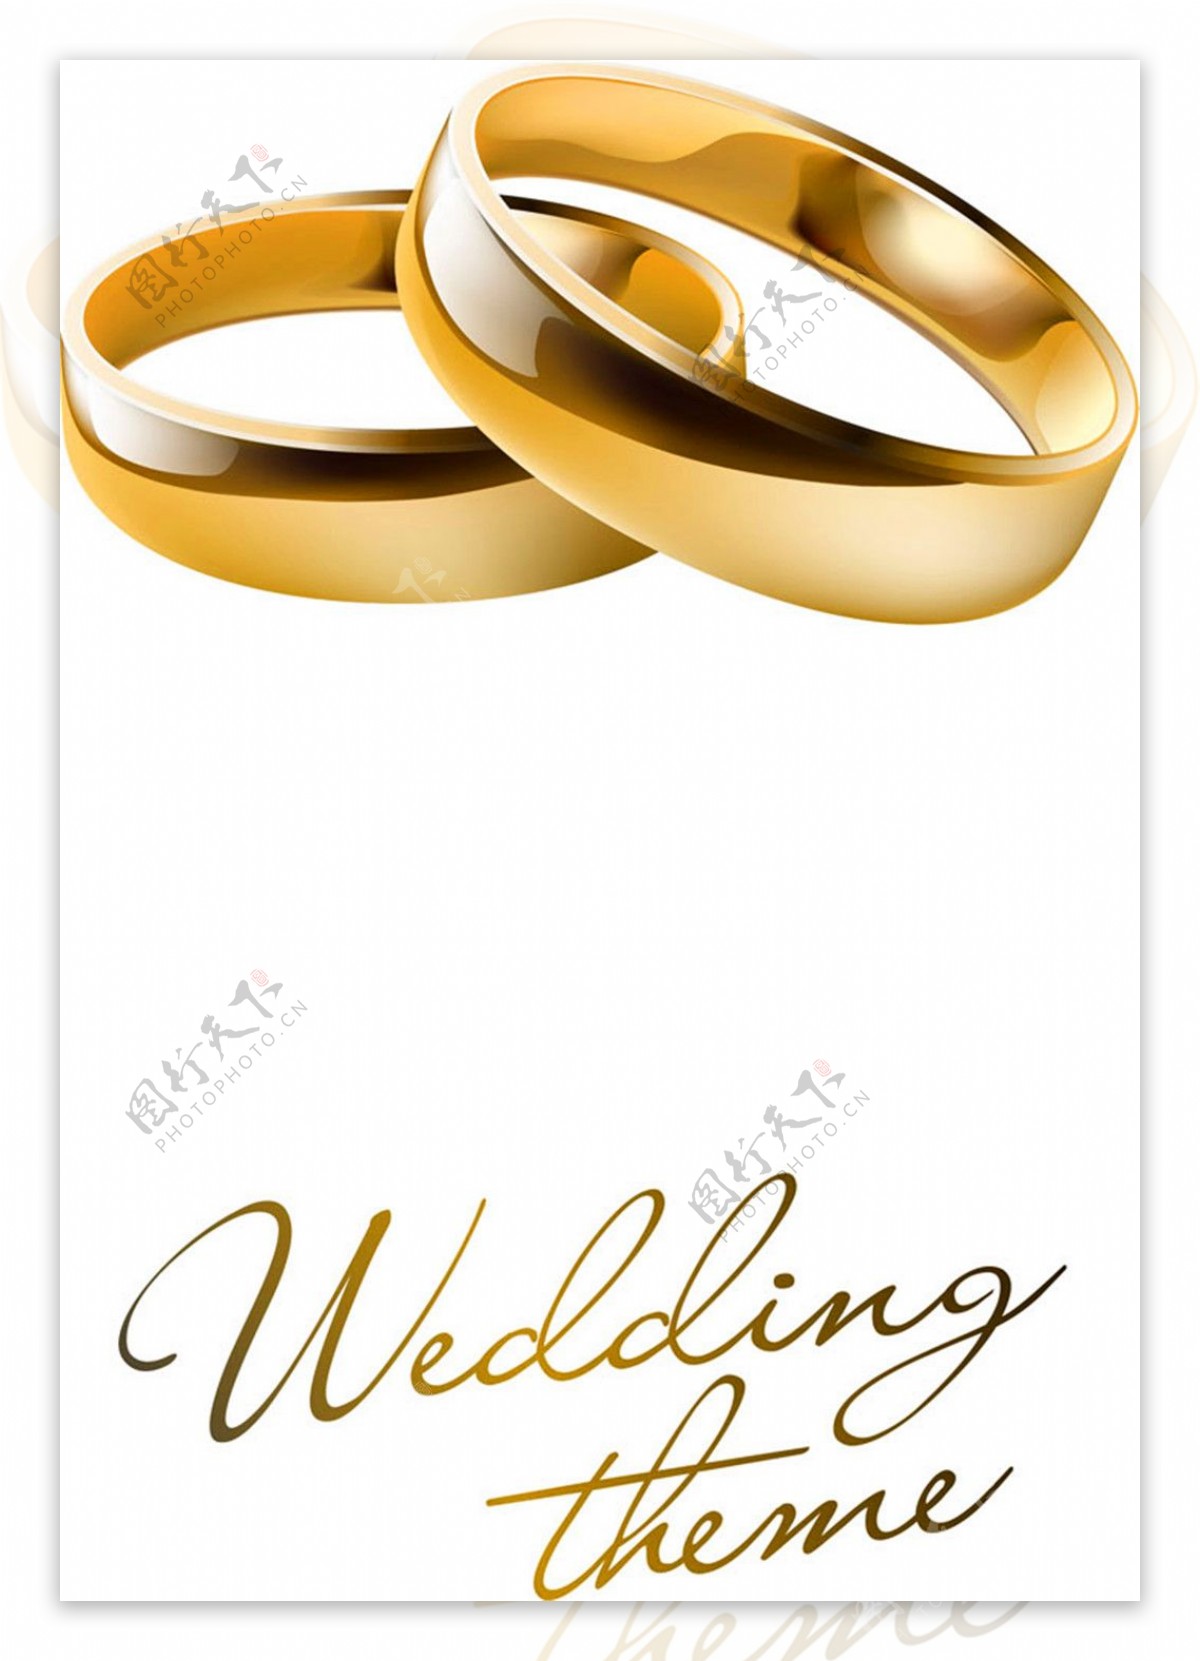 结婚戒指素材图片